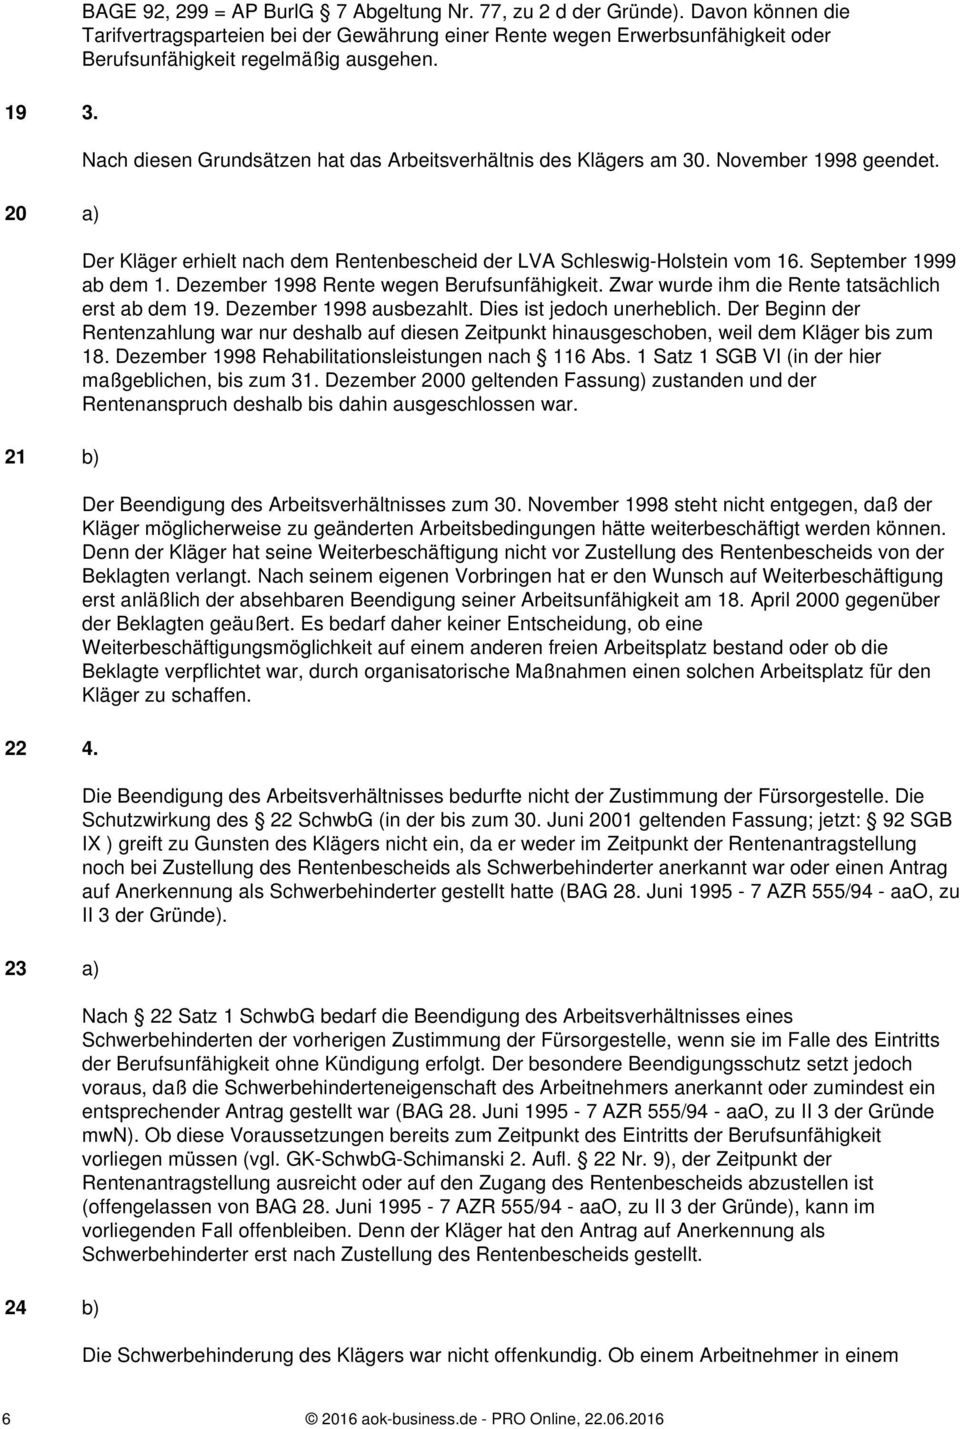 Nach diesen Grundsätzen hat das Arbeitsverhältnis des Klägers am 30. November 1998 geendet. Der Kläger erhielt nach dem Rentenbescheid der LVA Schleswig-Holstein vom 16. September 1999 ab dem 1.